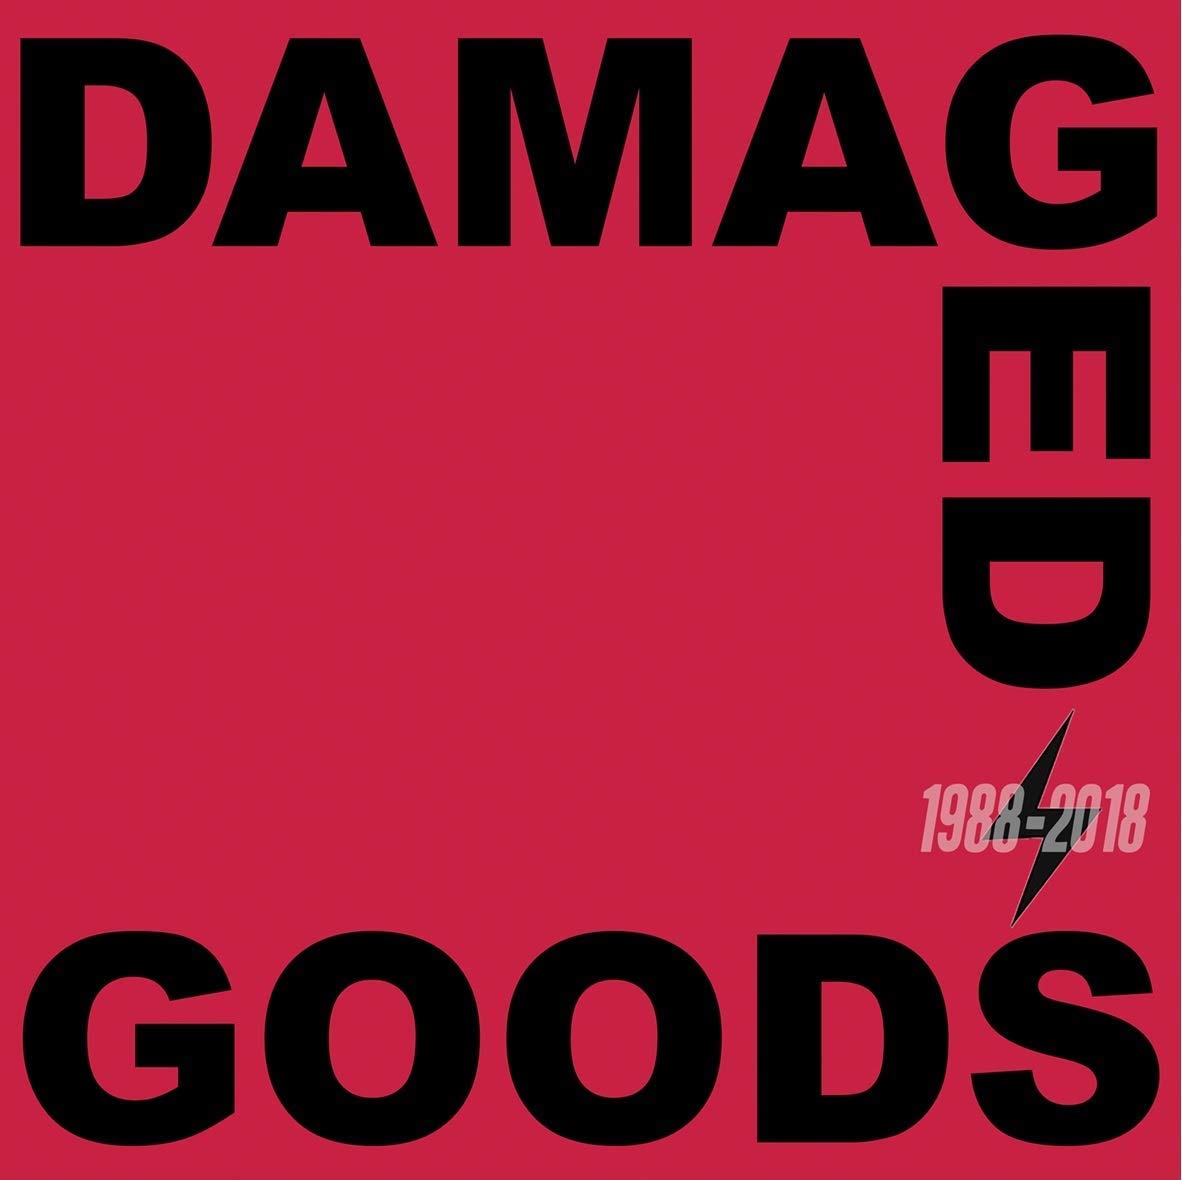 Damaged Goods 1988-2018 / Various | DAMAGED GOODS 1988-2018 / VARIOUS | CD